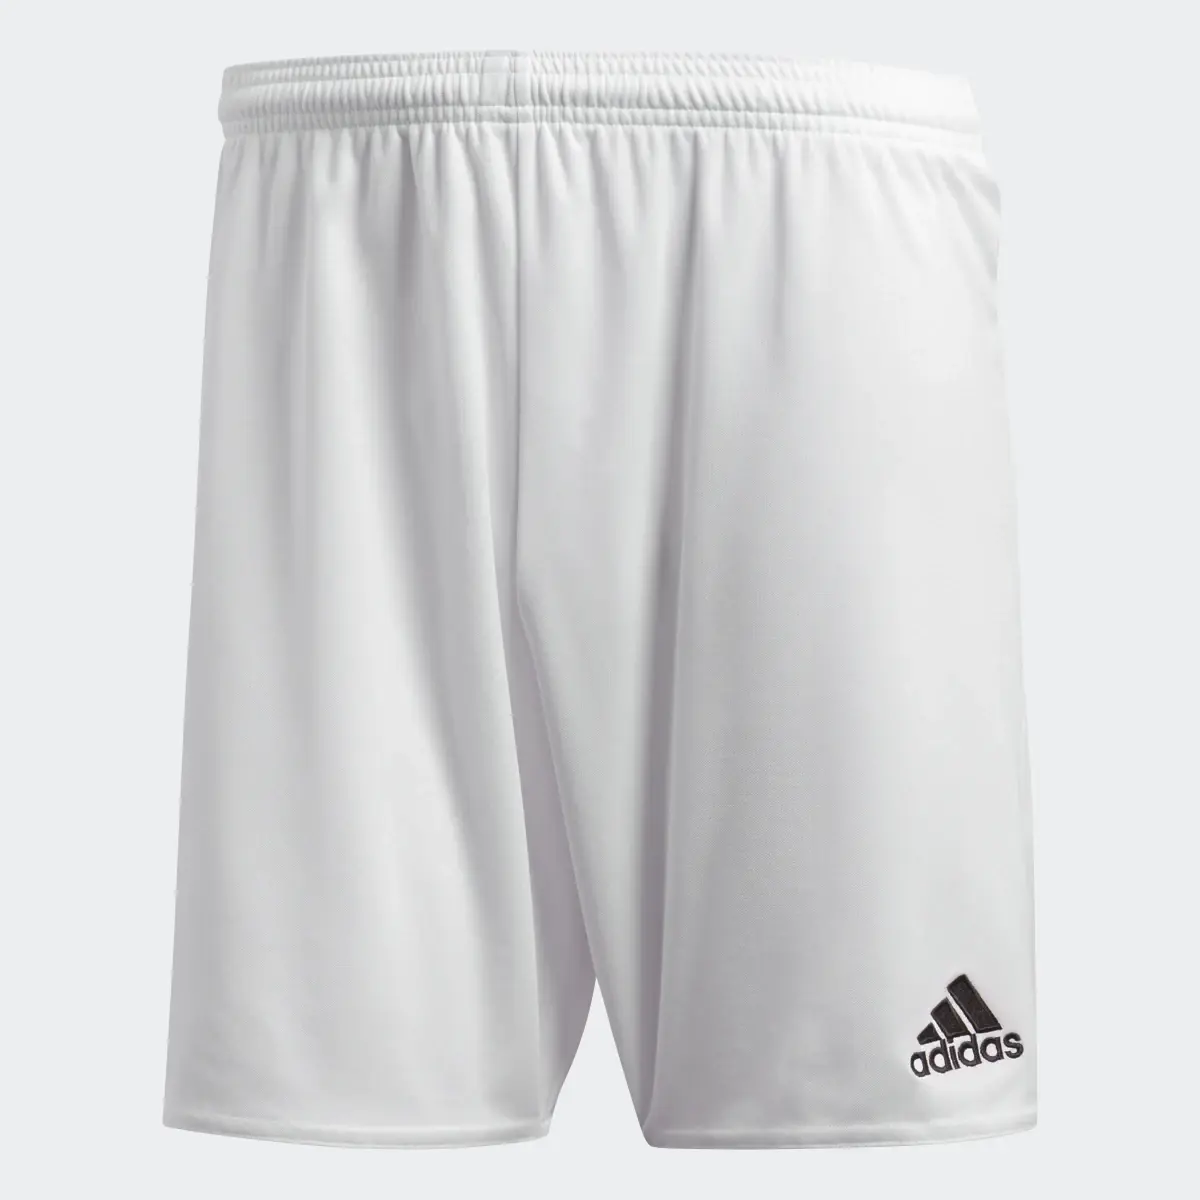 Adidas Parma 16 Shorts. 2